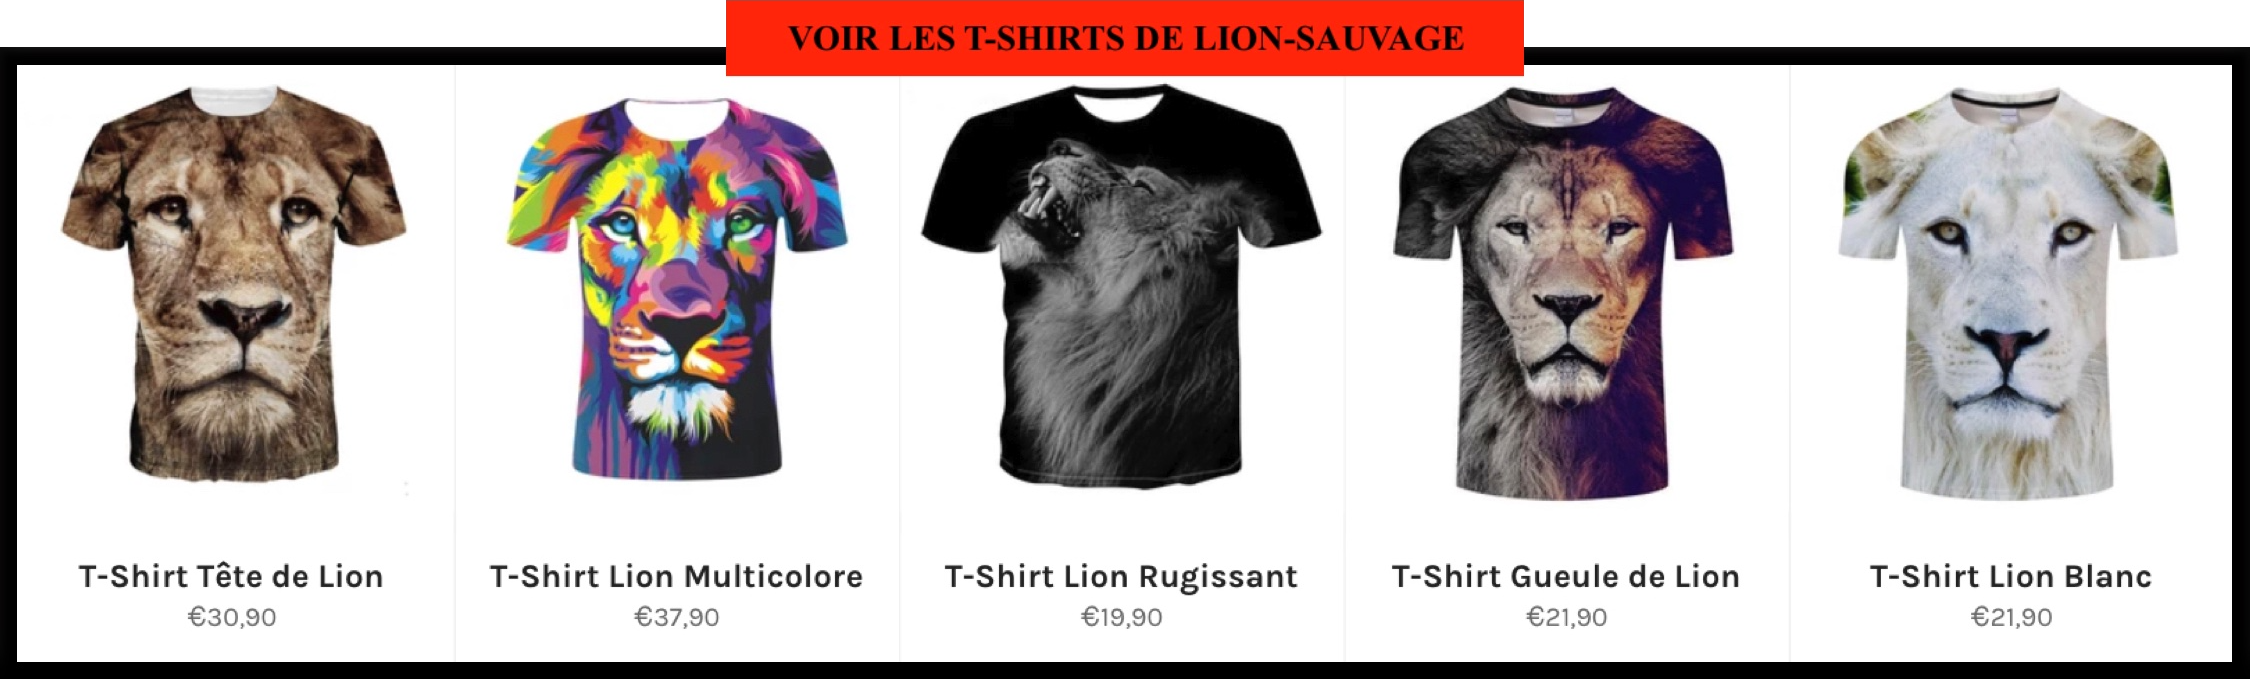 T-shirt Lion pas cher boutique Lion Sauvage